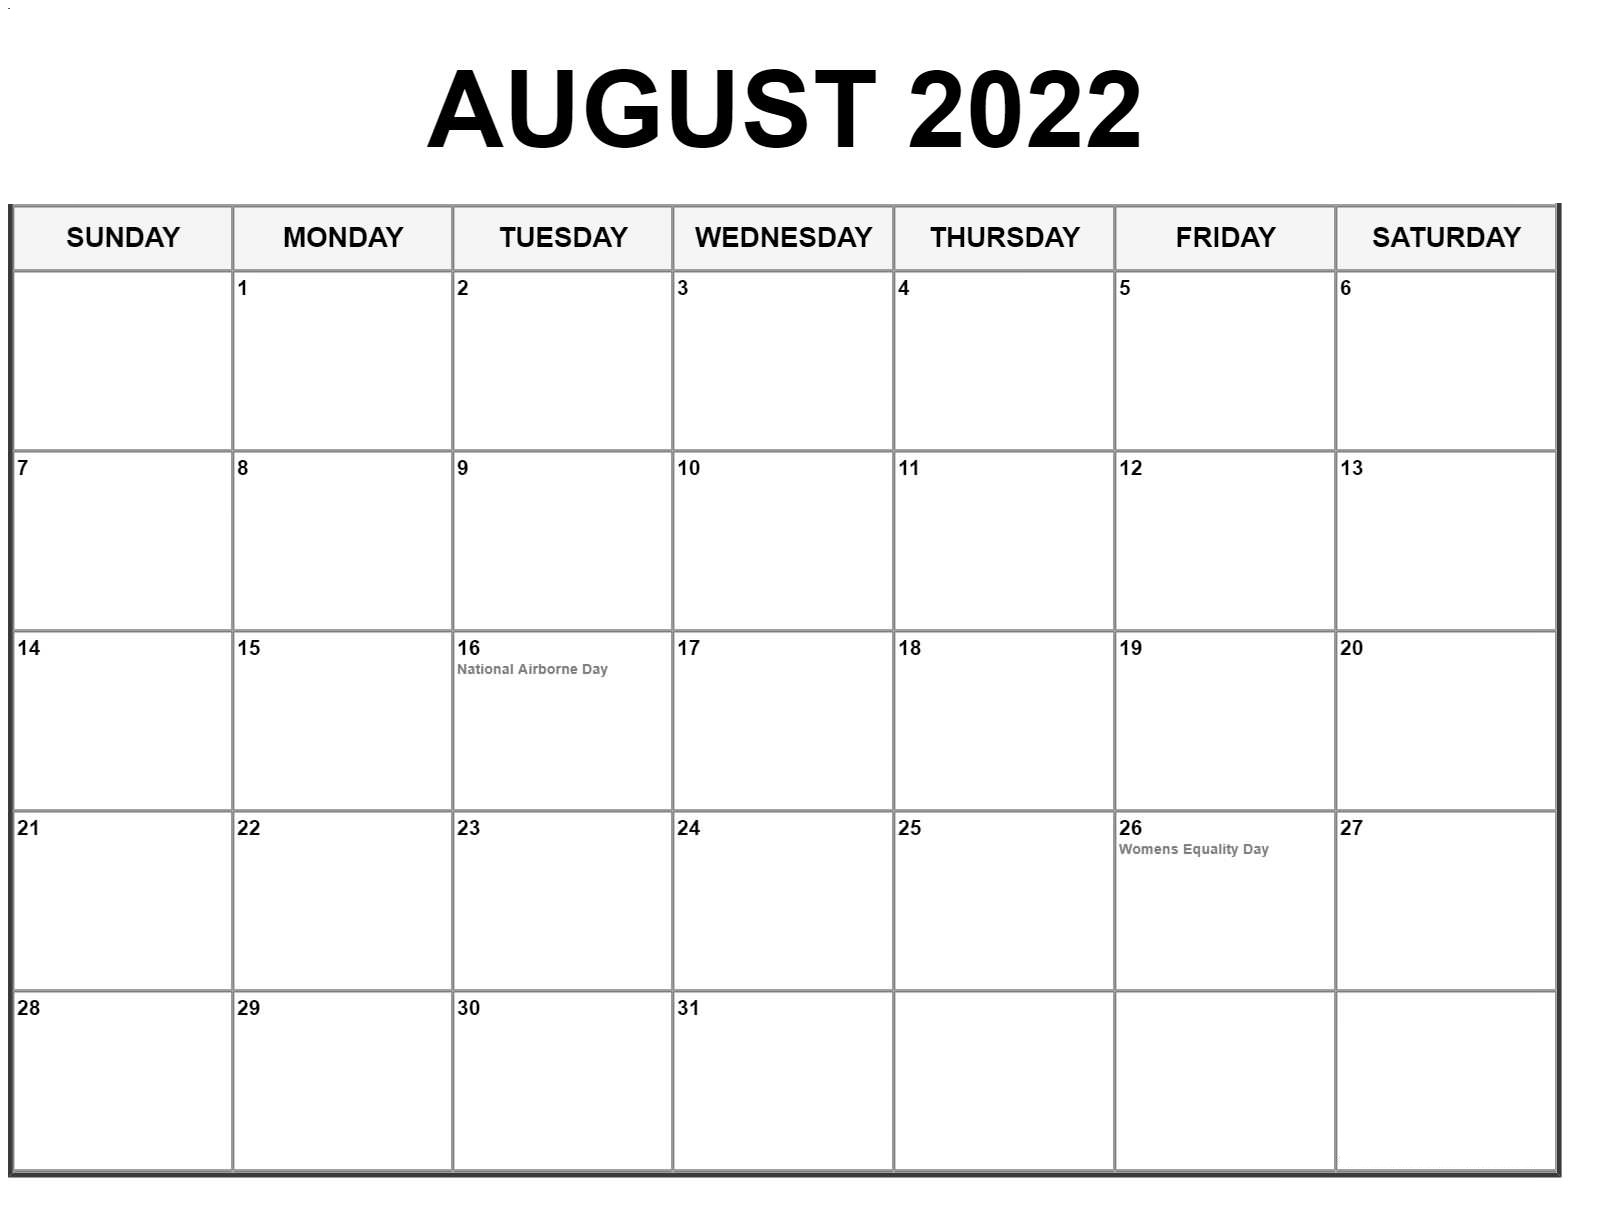 Frei August 2022 Kalender Ausdrucken